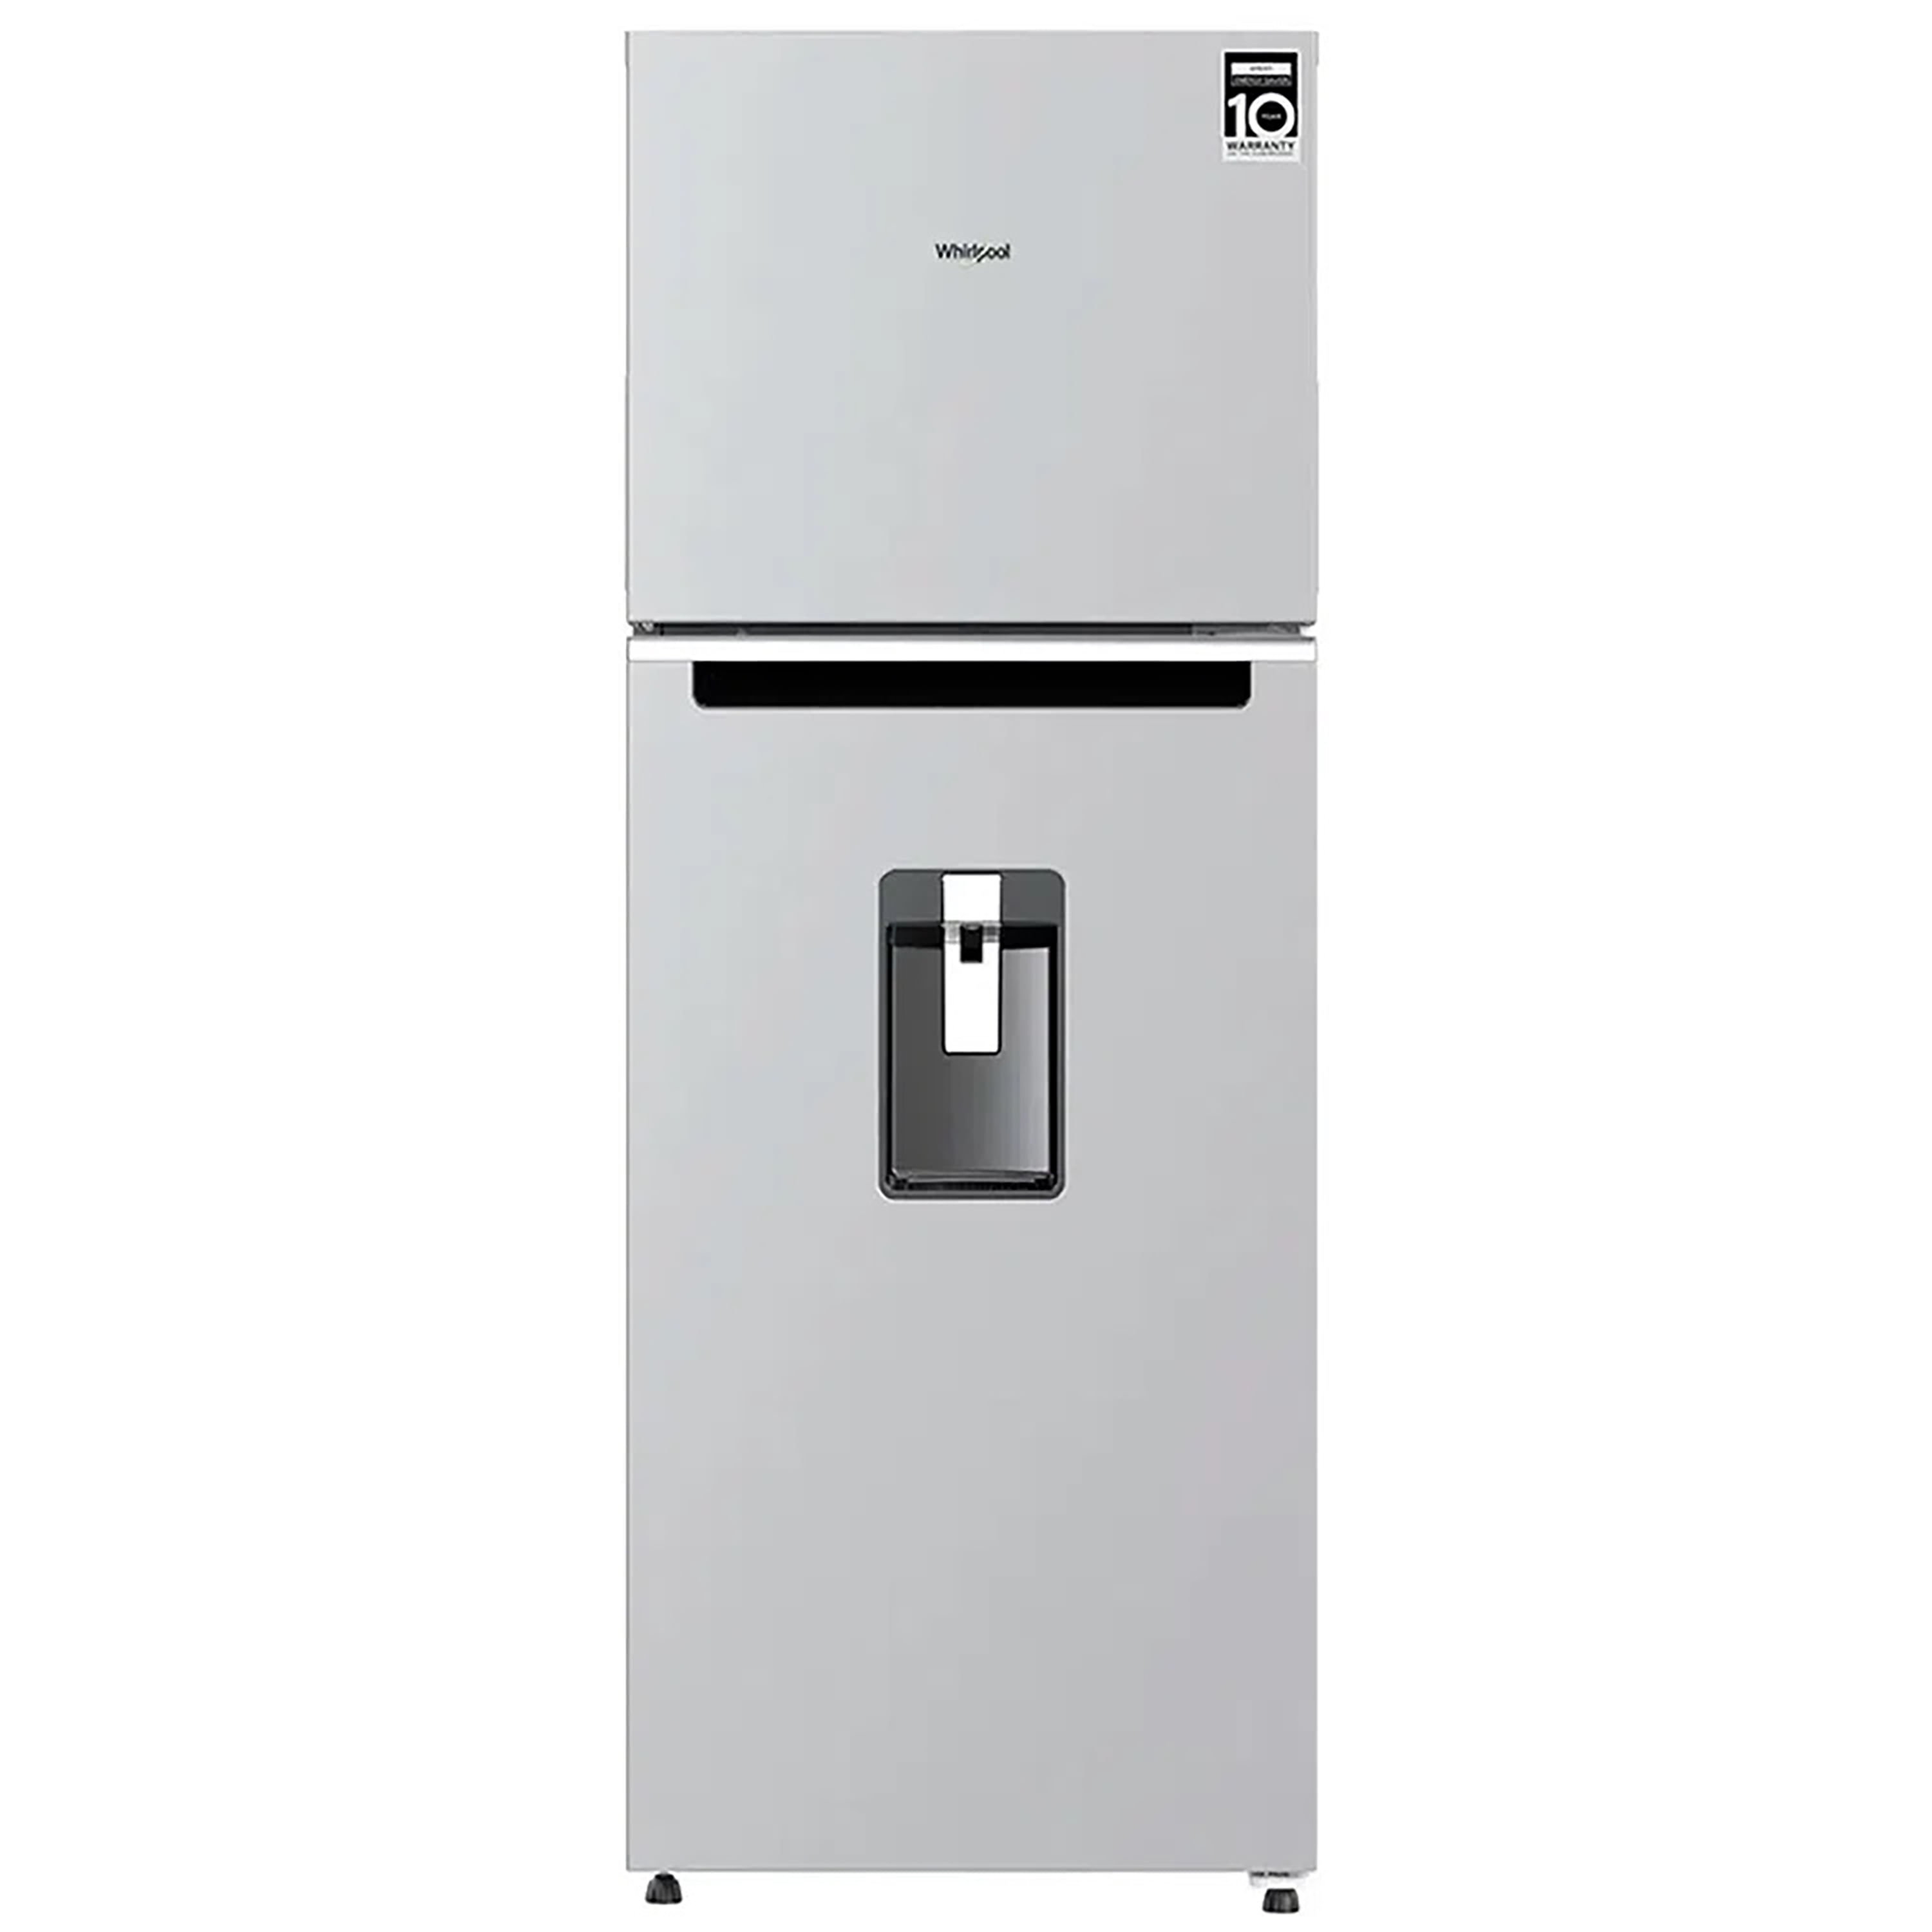 Refrigeradora-Whirlpool-11Pc-Con-Dispensador-1-83545